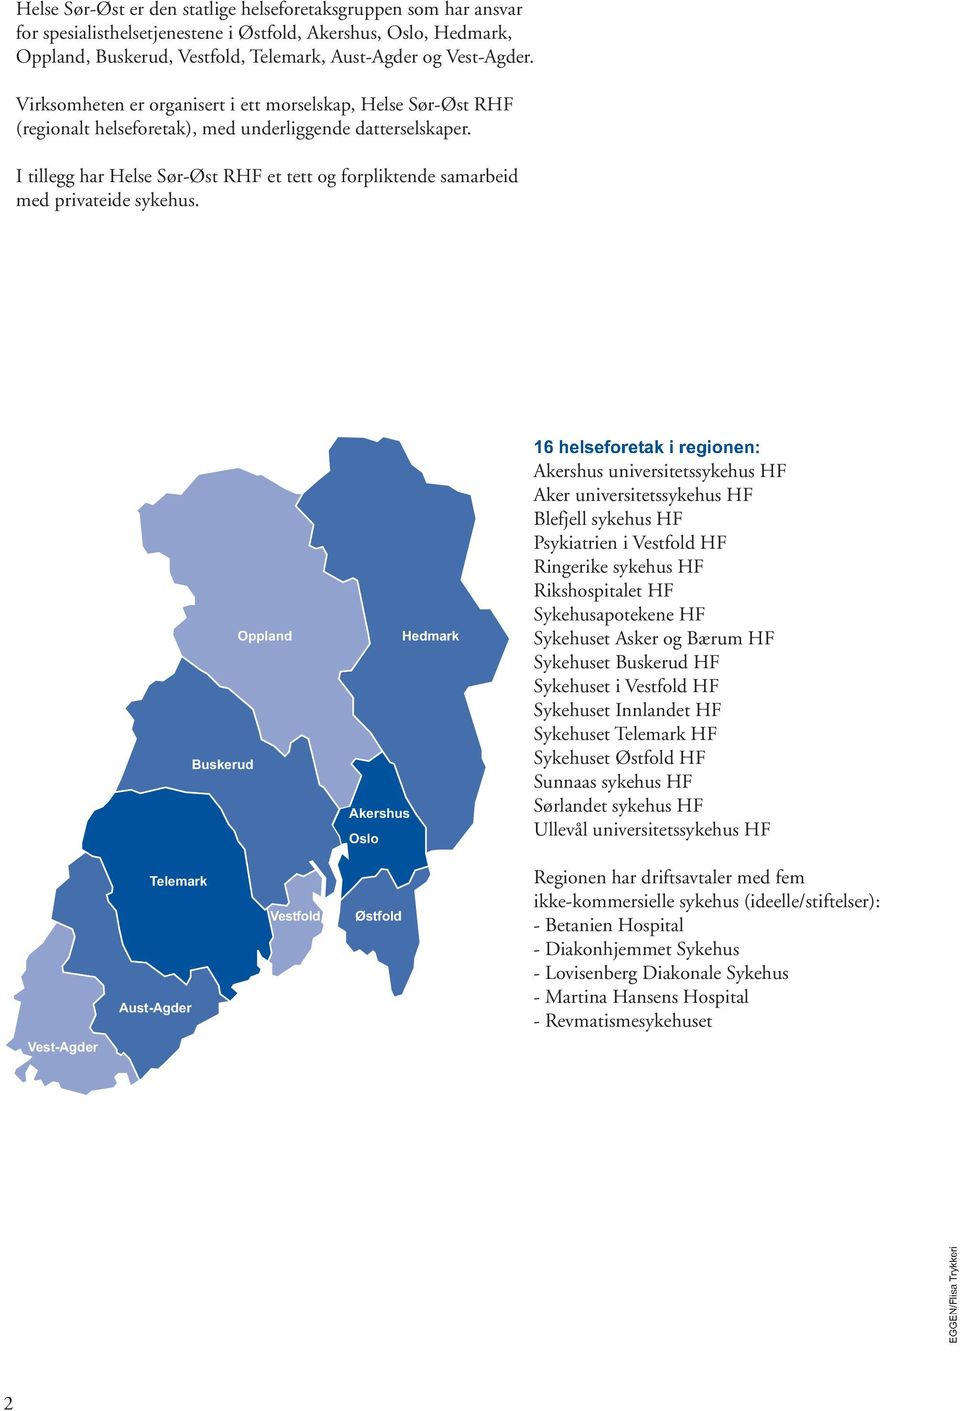 I tillegg har Helse Sør-Øst RHF et tett og forpliktende samarbeid med privateide sykehus.